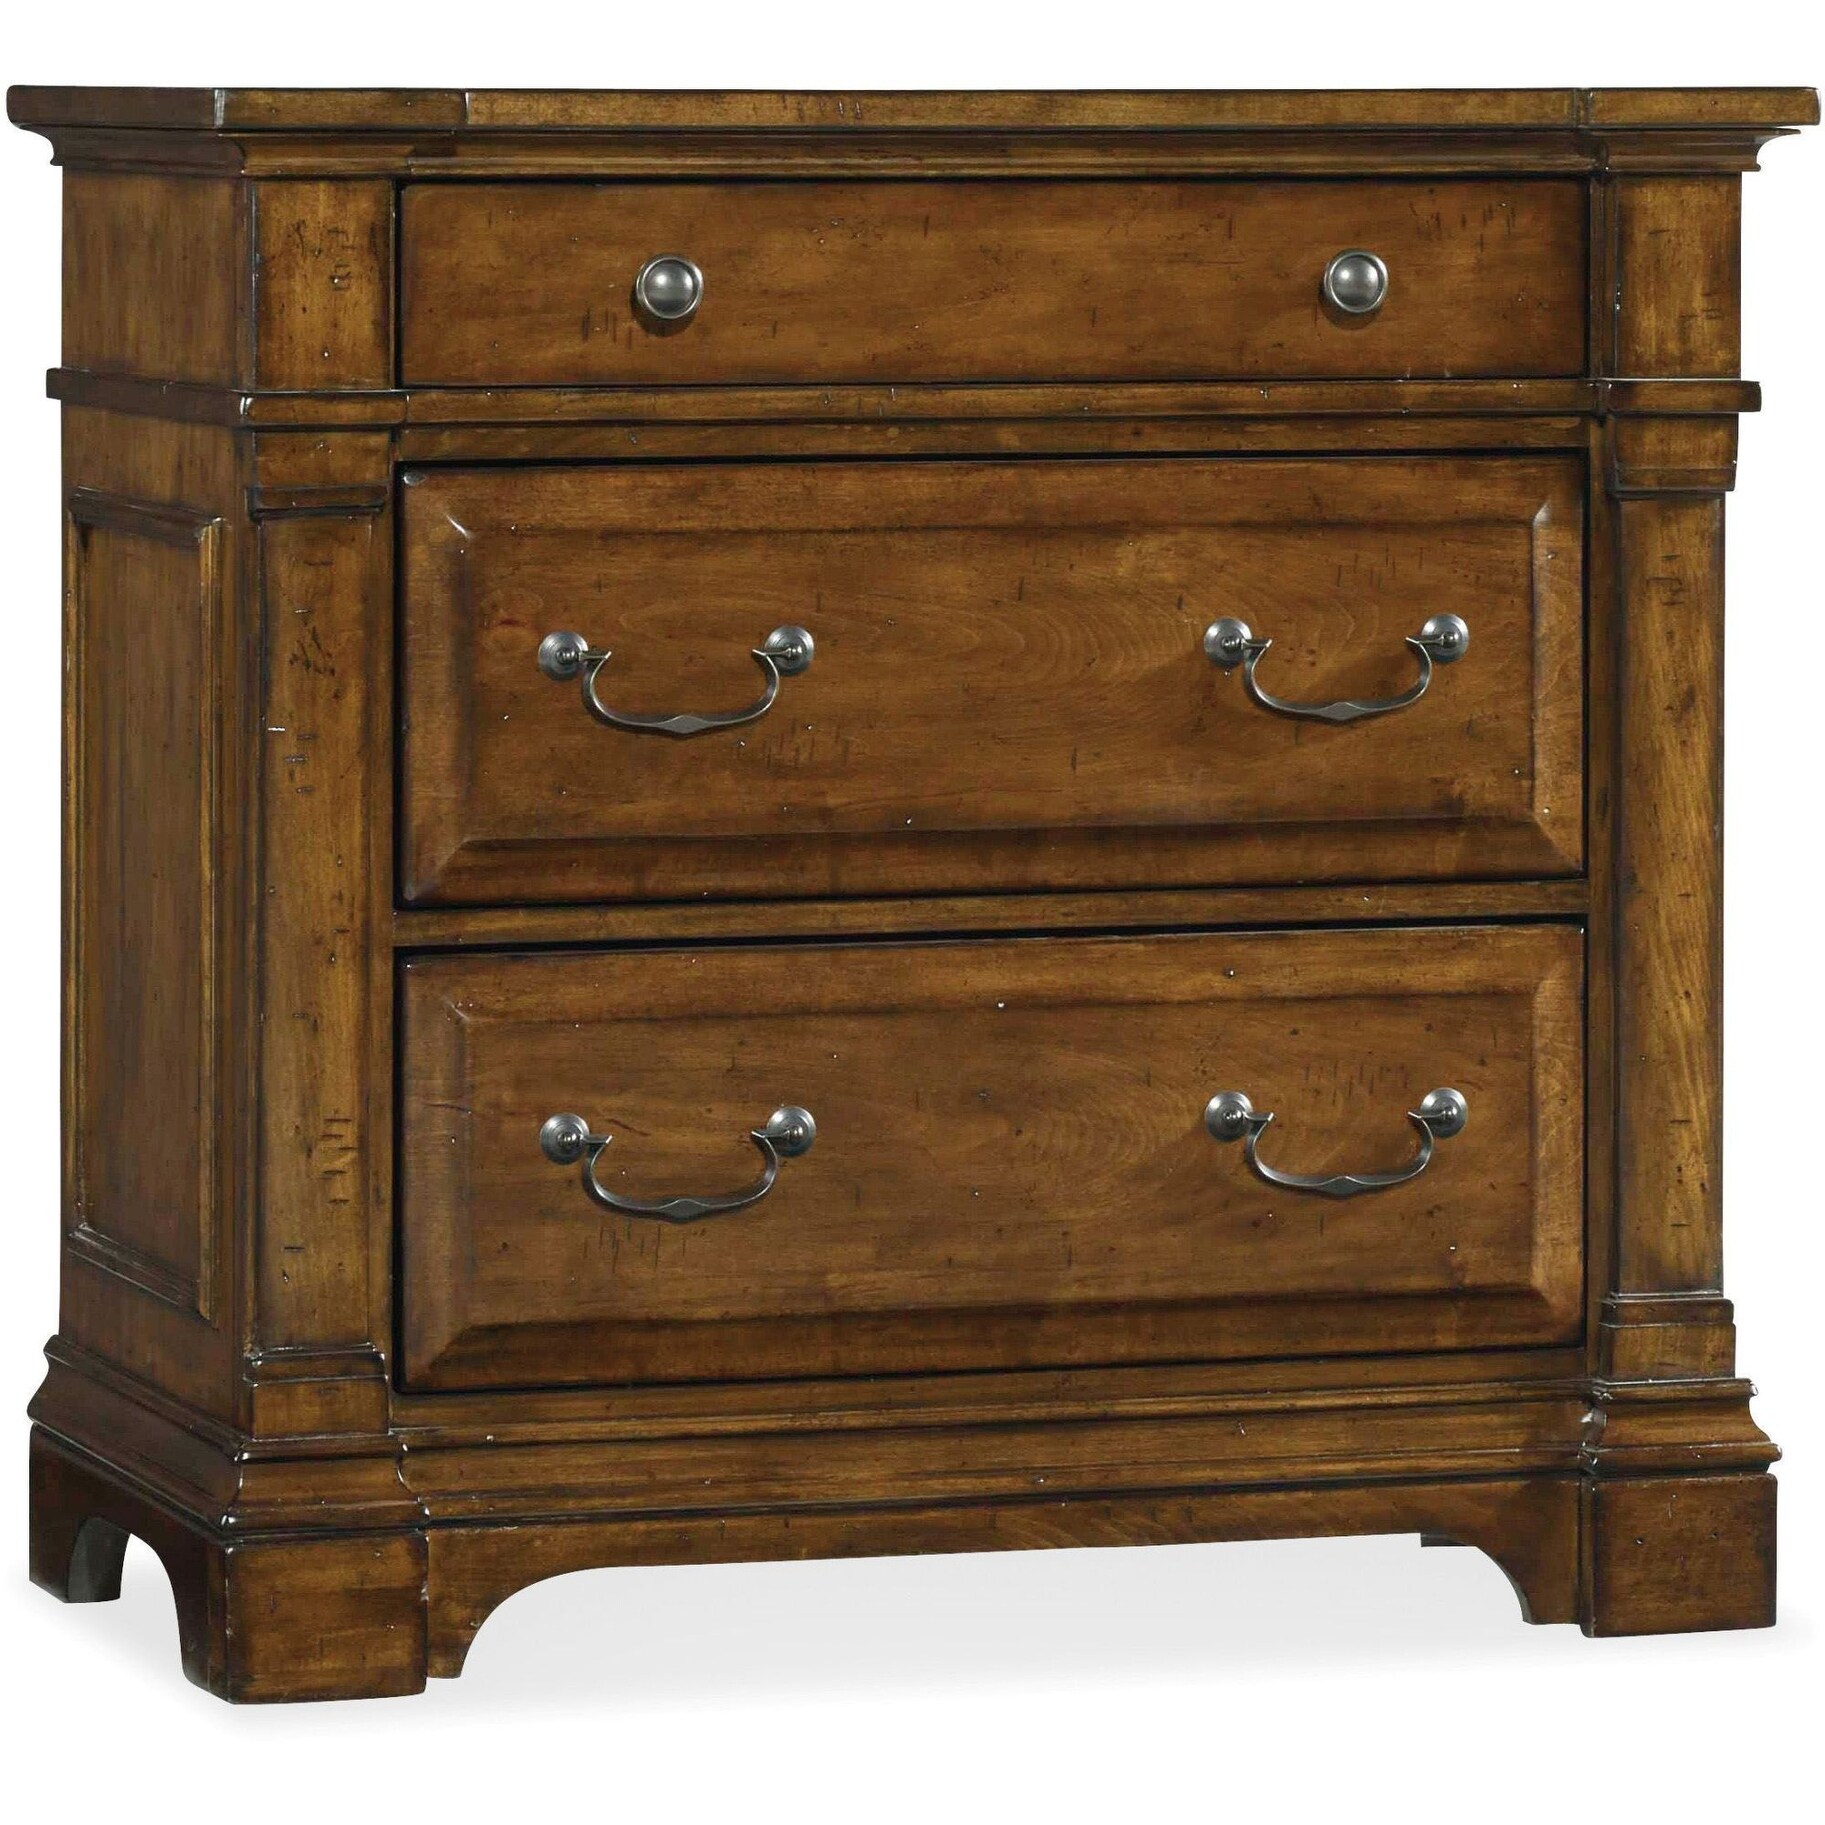 Shop Hooker Furniture 5323 90017 36 Wide 3 Drawer Poplar Wood